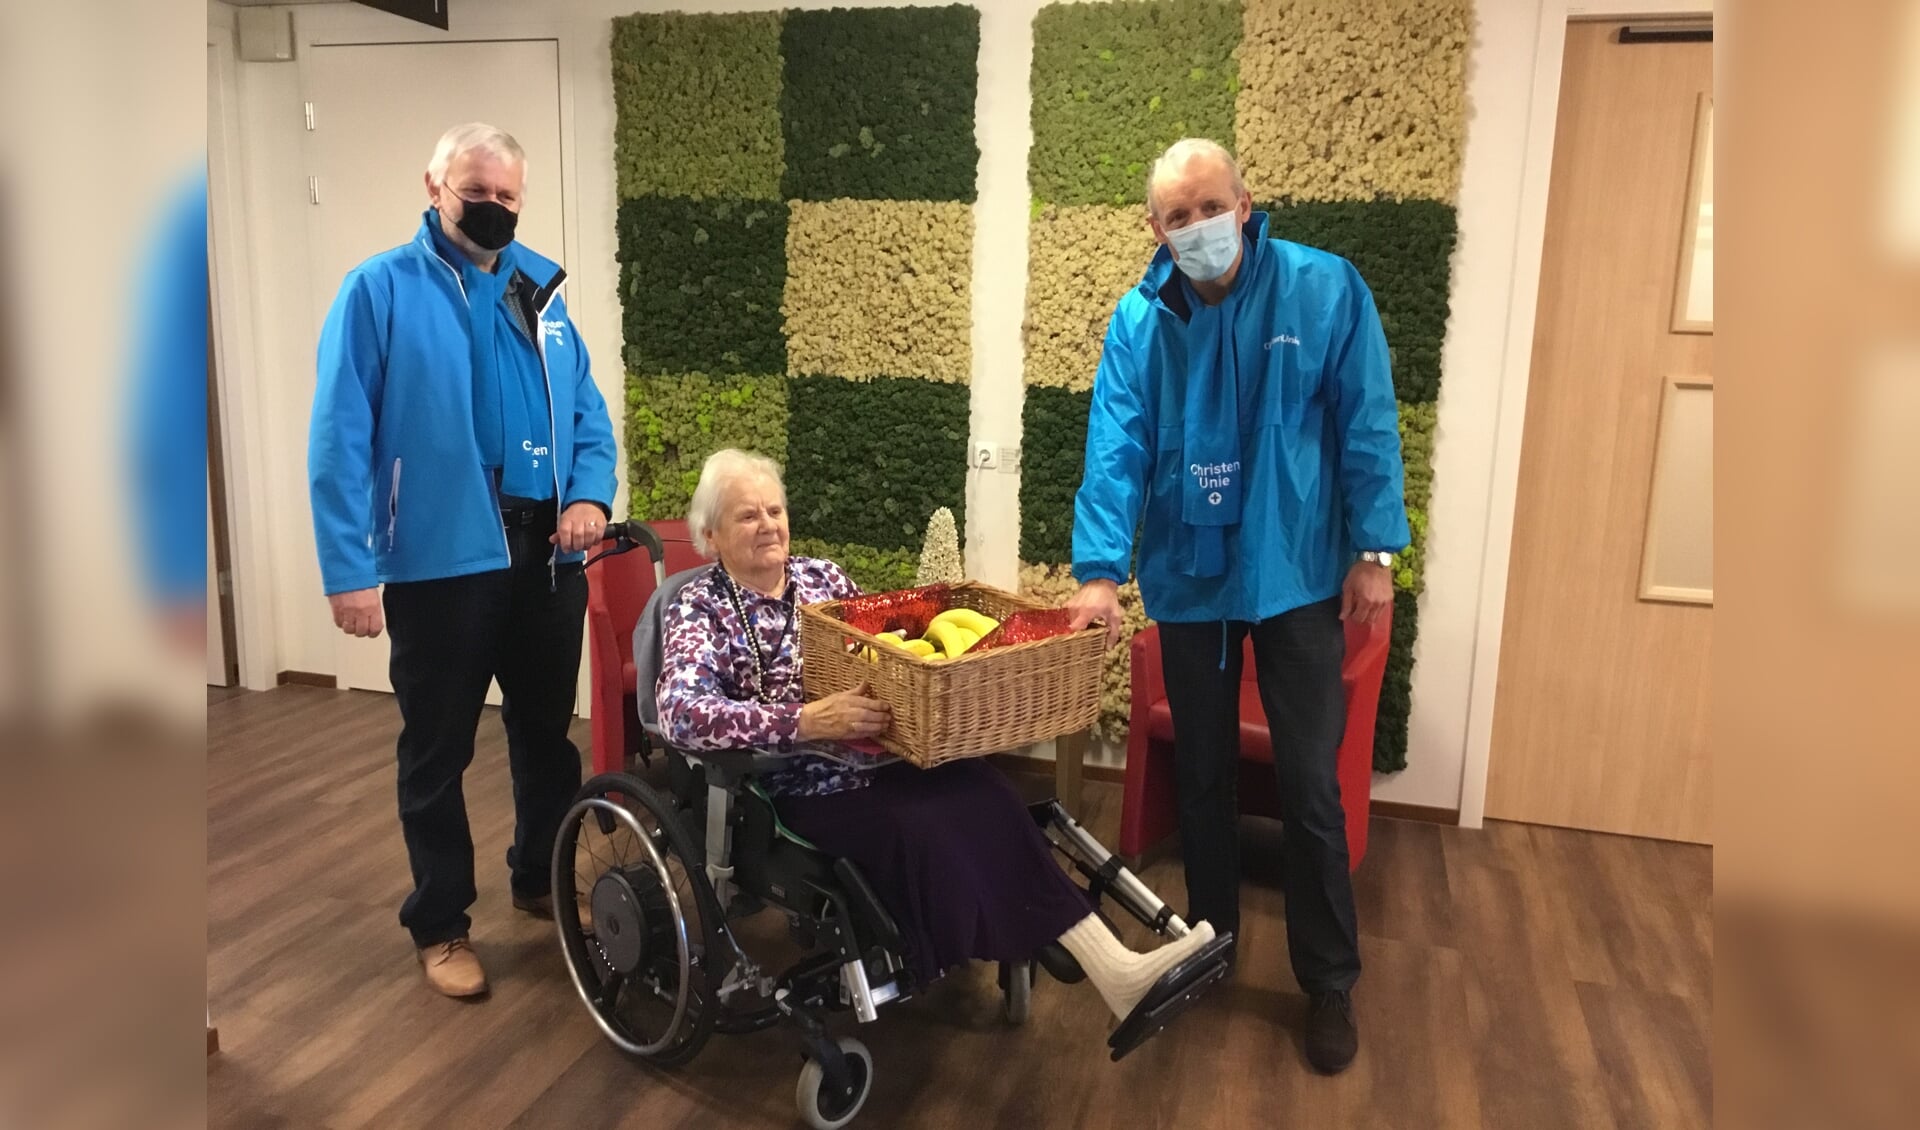 ChristenUnie raadsleden Wim IJzerman en Willem Pors overhandigen een grote mand met fruit aan bewoner van de Tiendwaert mw.van Houwelingen.e 